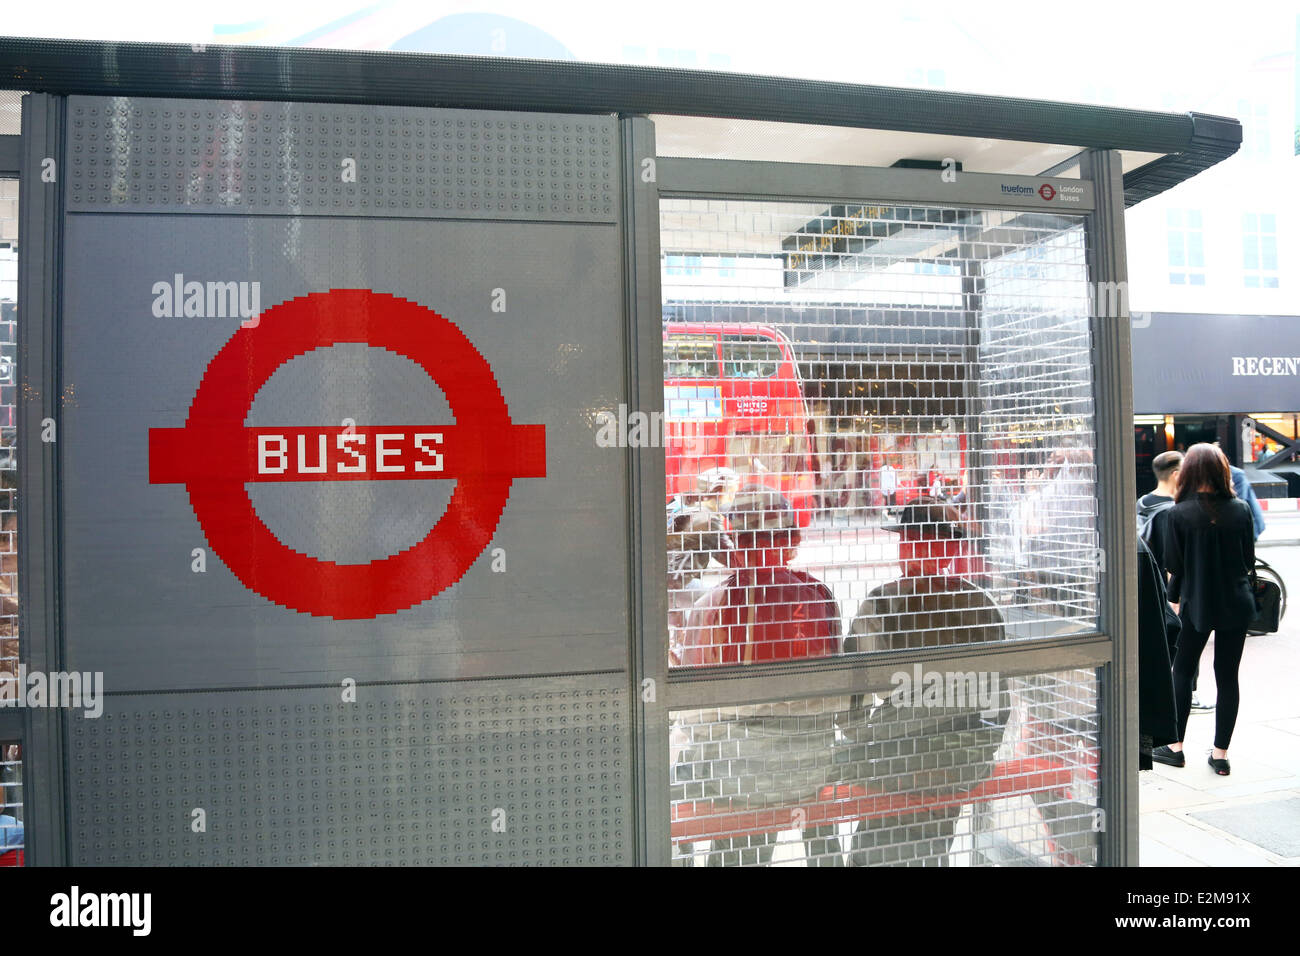 Lego Bus londonien, Brick-It, Location de Lego